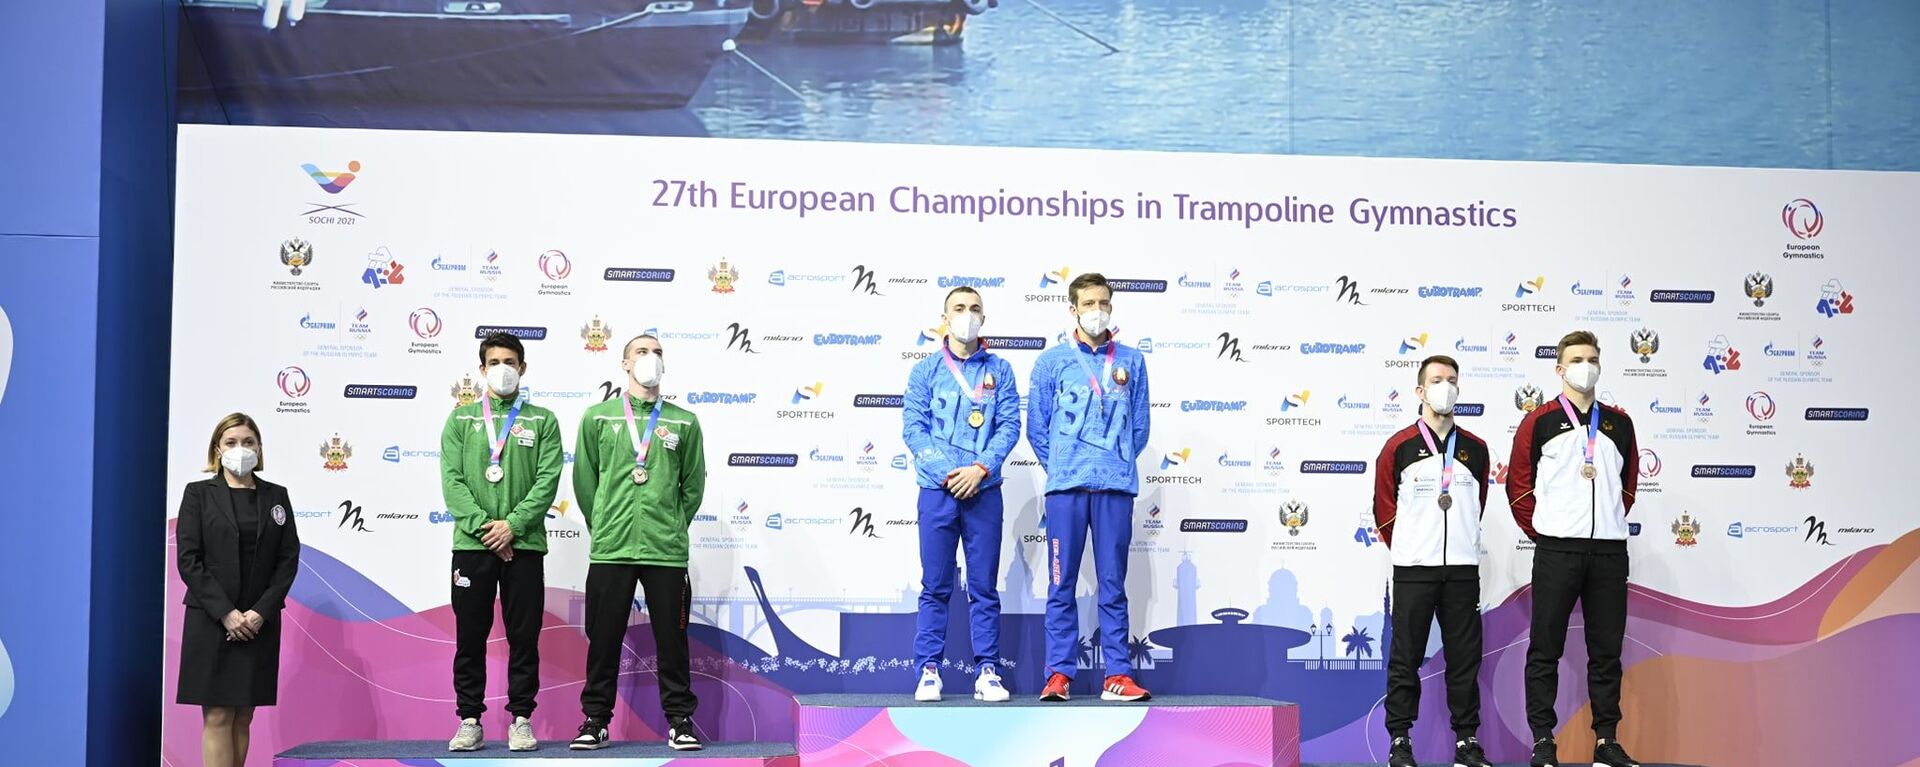 Белорусские спортсмены завоевали 13 медалей на чемпионате Европы в Сочи по прыжкам на батуте, акробатической дорожке и двойном мини-трампе  - Sputnik Беларусь, 1920, 03.05.2021